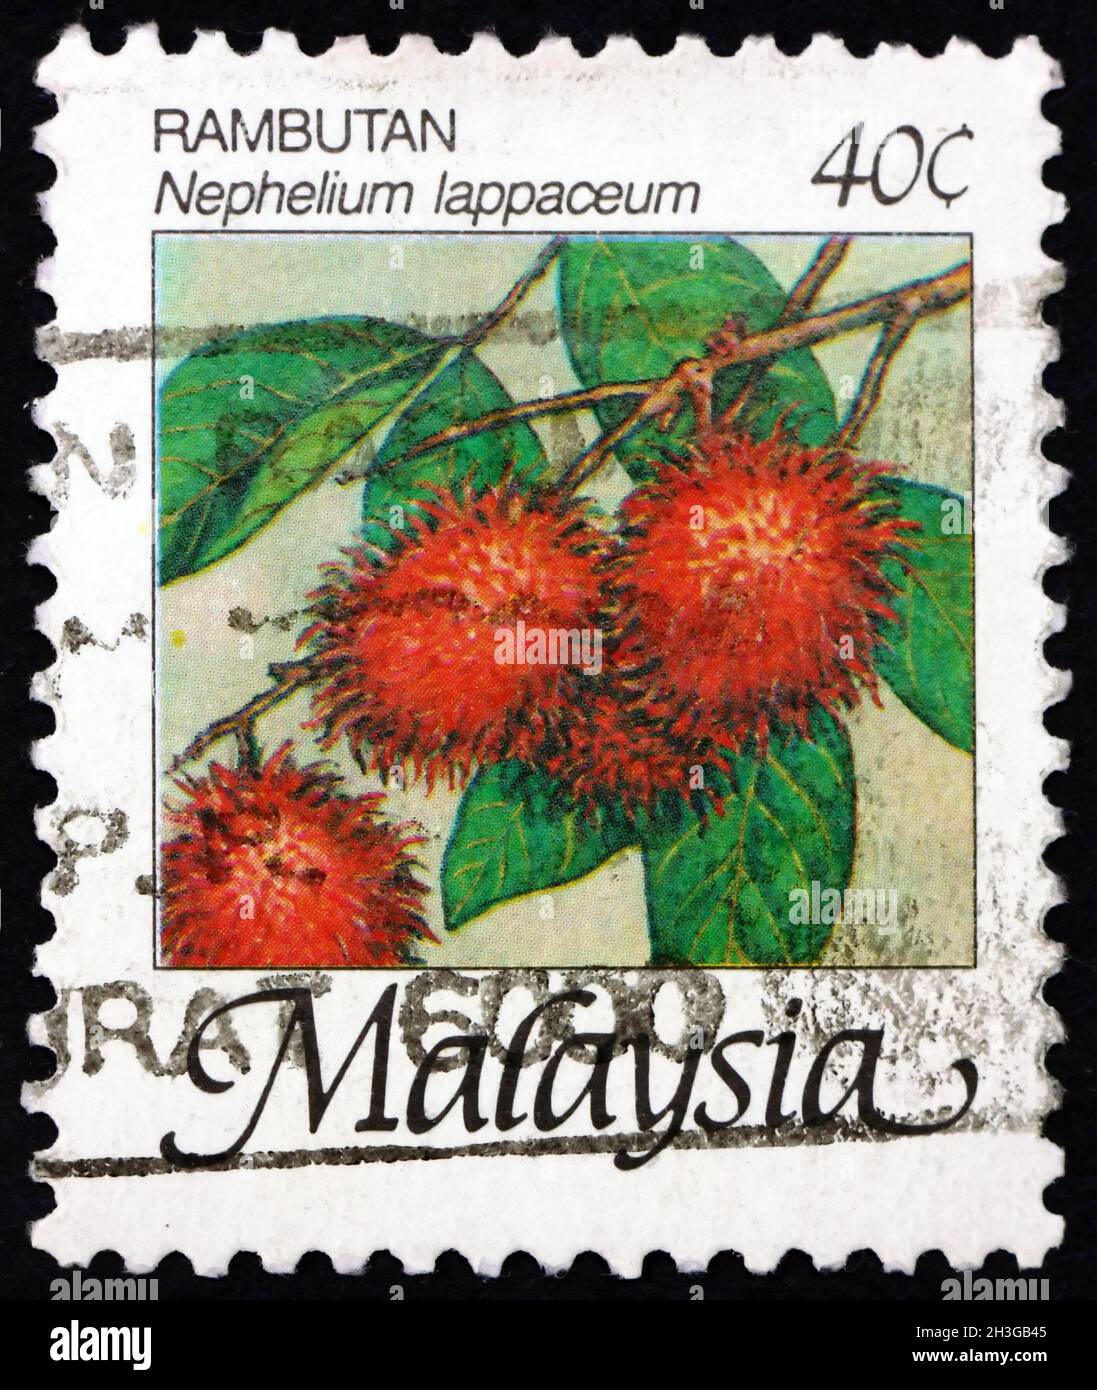 MALAYSIA - UM 1986: Eine in Malaysia gedruckte Marke zeigt Rambutan (nephelium lappaceum), essbare Früchte, die von diesem Baum hergestellt wurden, um 1986 Stockfoto